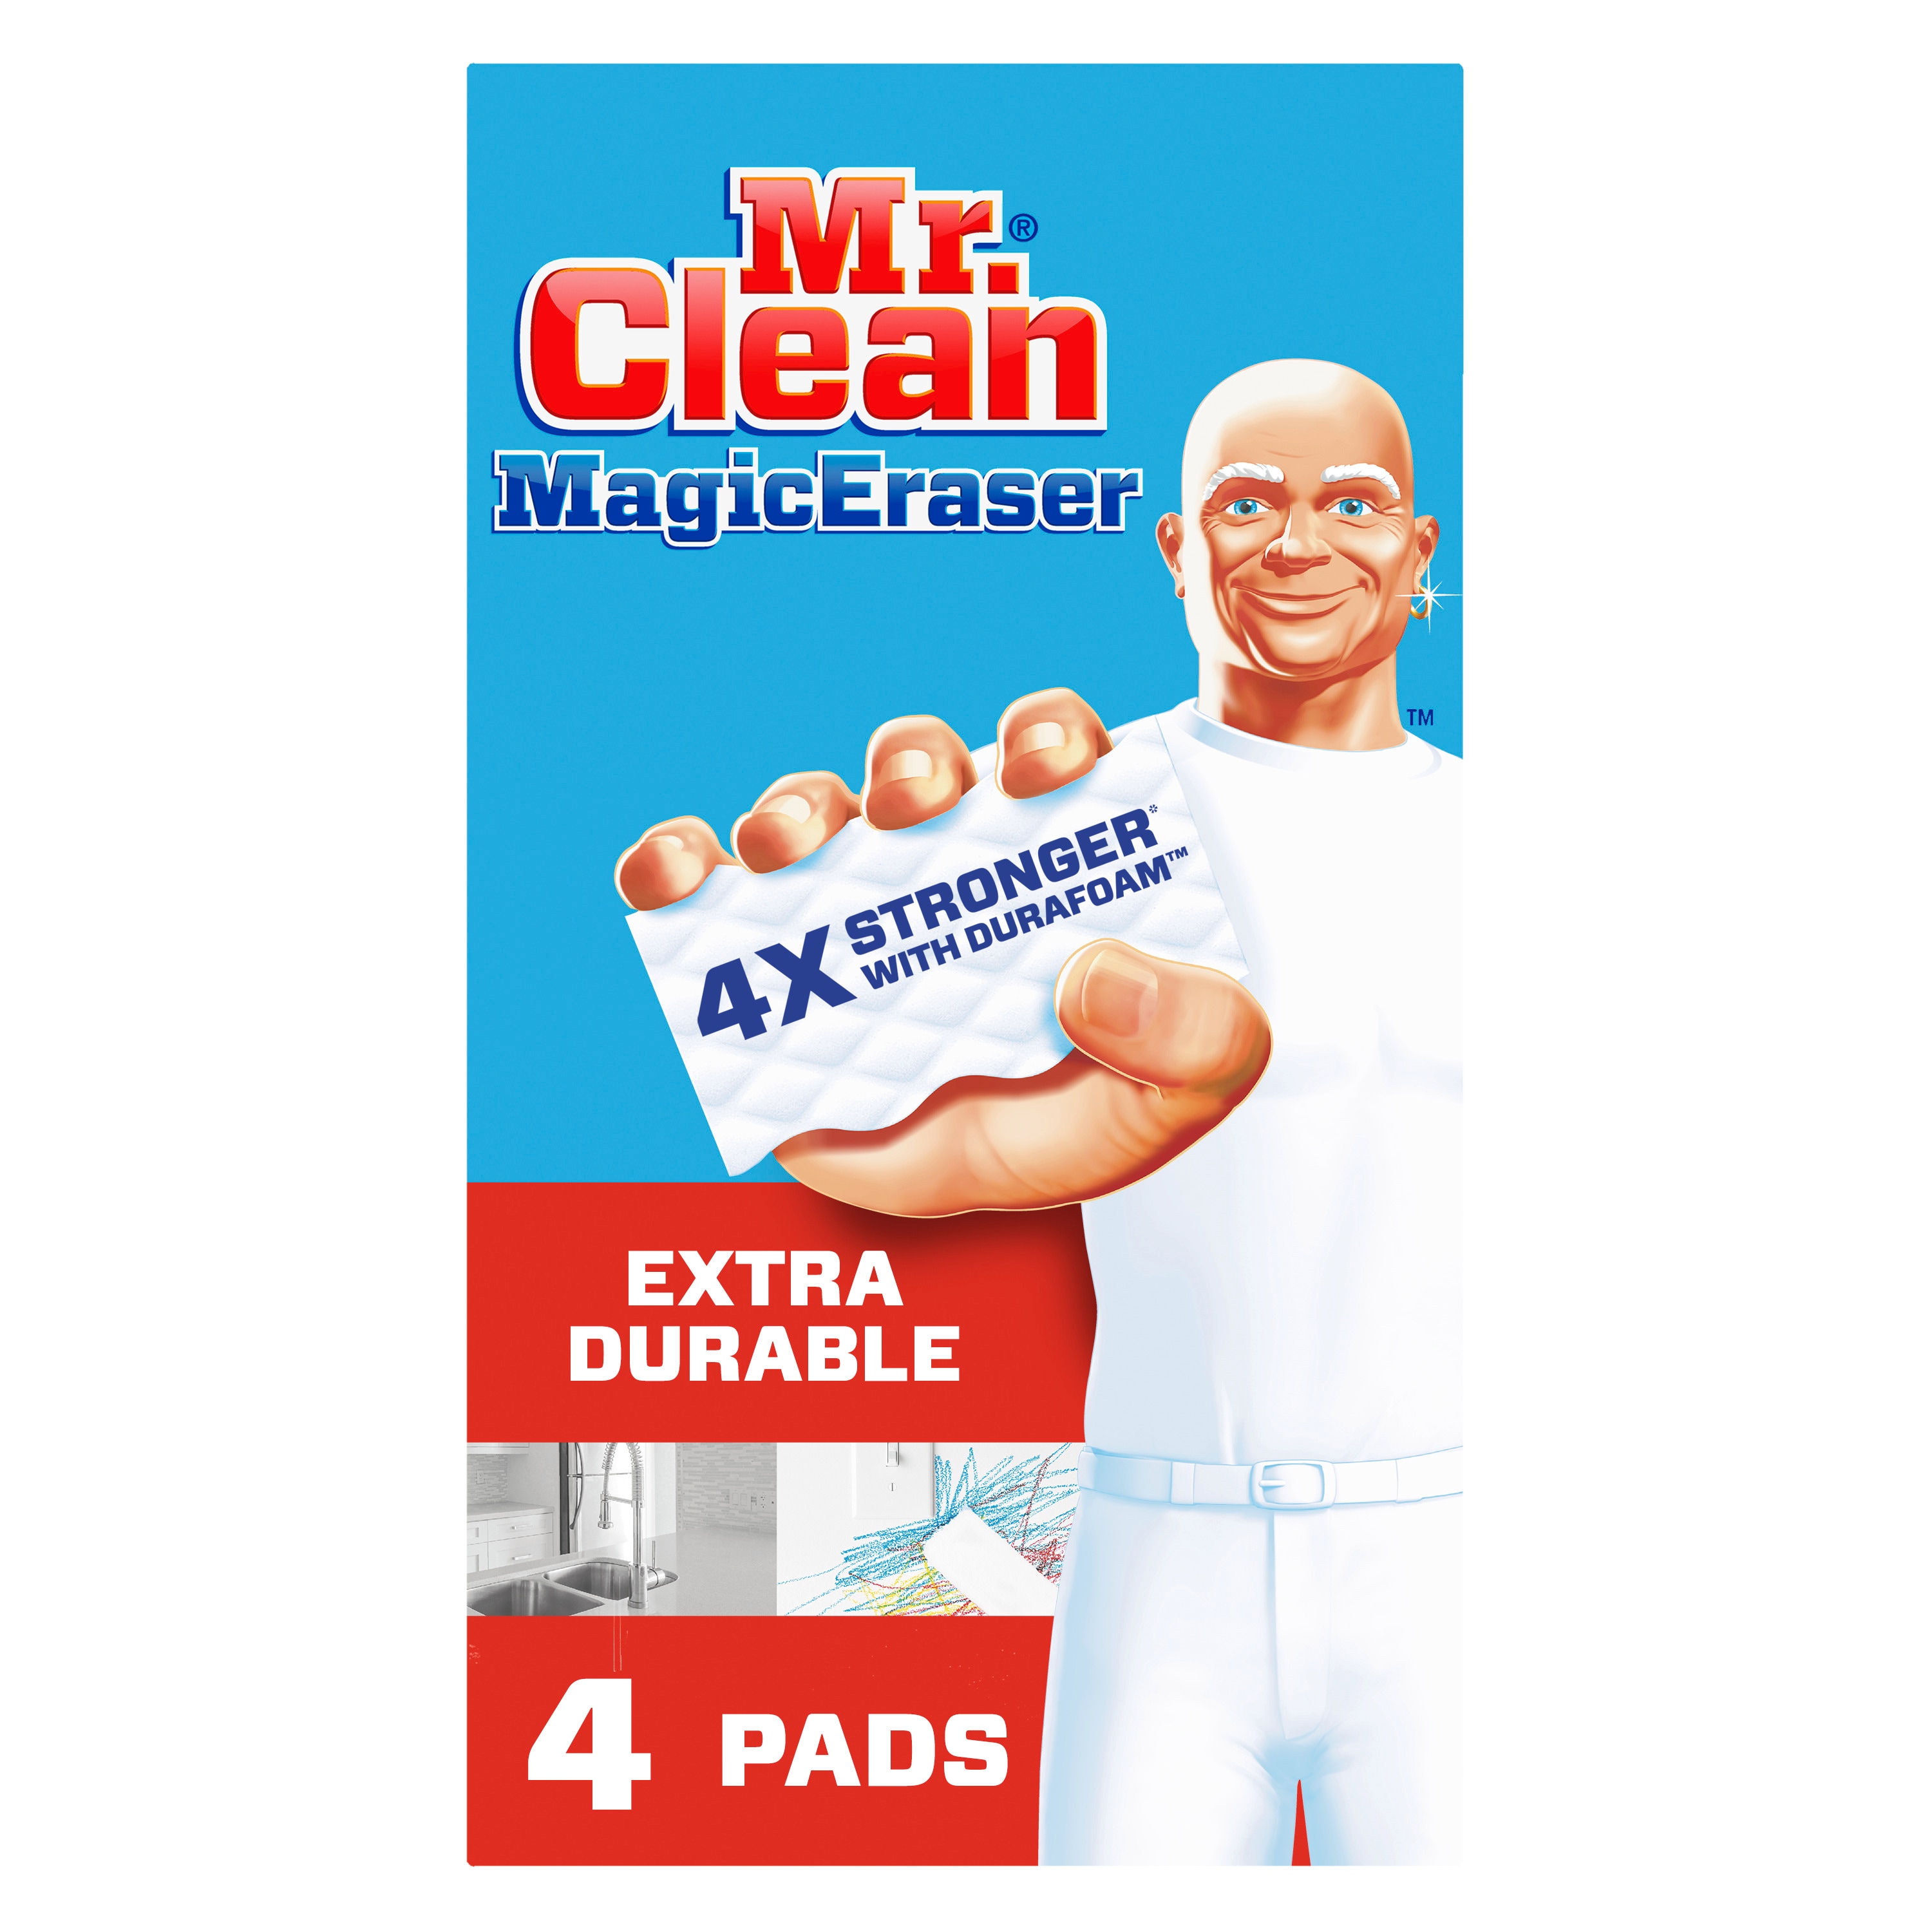 Bông tẩy sạch Melamine Mr. Clean 4-Pack trong Sponges & Scouring Pads: Nếu bạn đang tìm kiếm một giải pháp tẩy sạch hiệu quả cho căn nhà của mình, bông tẩy sạch Melamine Mr. Clean 4-Pack chính là sự lựa chọn hoàn hảo. Với thiết kế tiện dụng và sự đa năng, bông tẩy sạch này dễ dàng tẩy sạch các vết bẩn và mảng bám trên bề mặt, chỉ với một chút nước. Hãy xem ngay hình ảnh liên quan đến từ khóa này để cảm nhận sự kỳ diệu của bông tẩy sạch Melamine Mr. Clean.